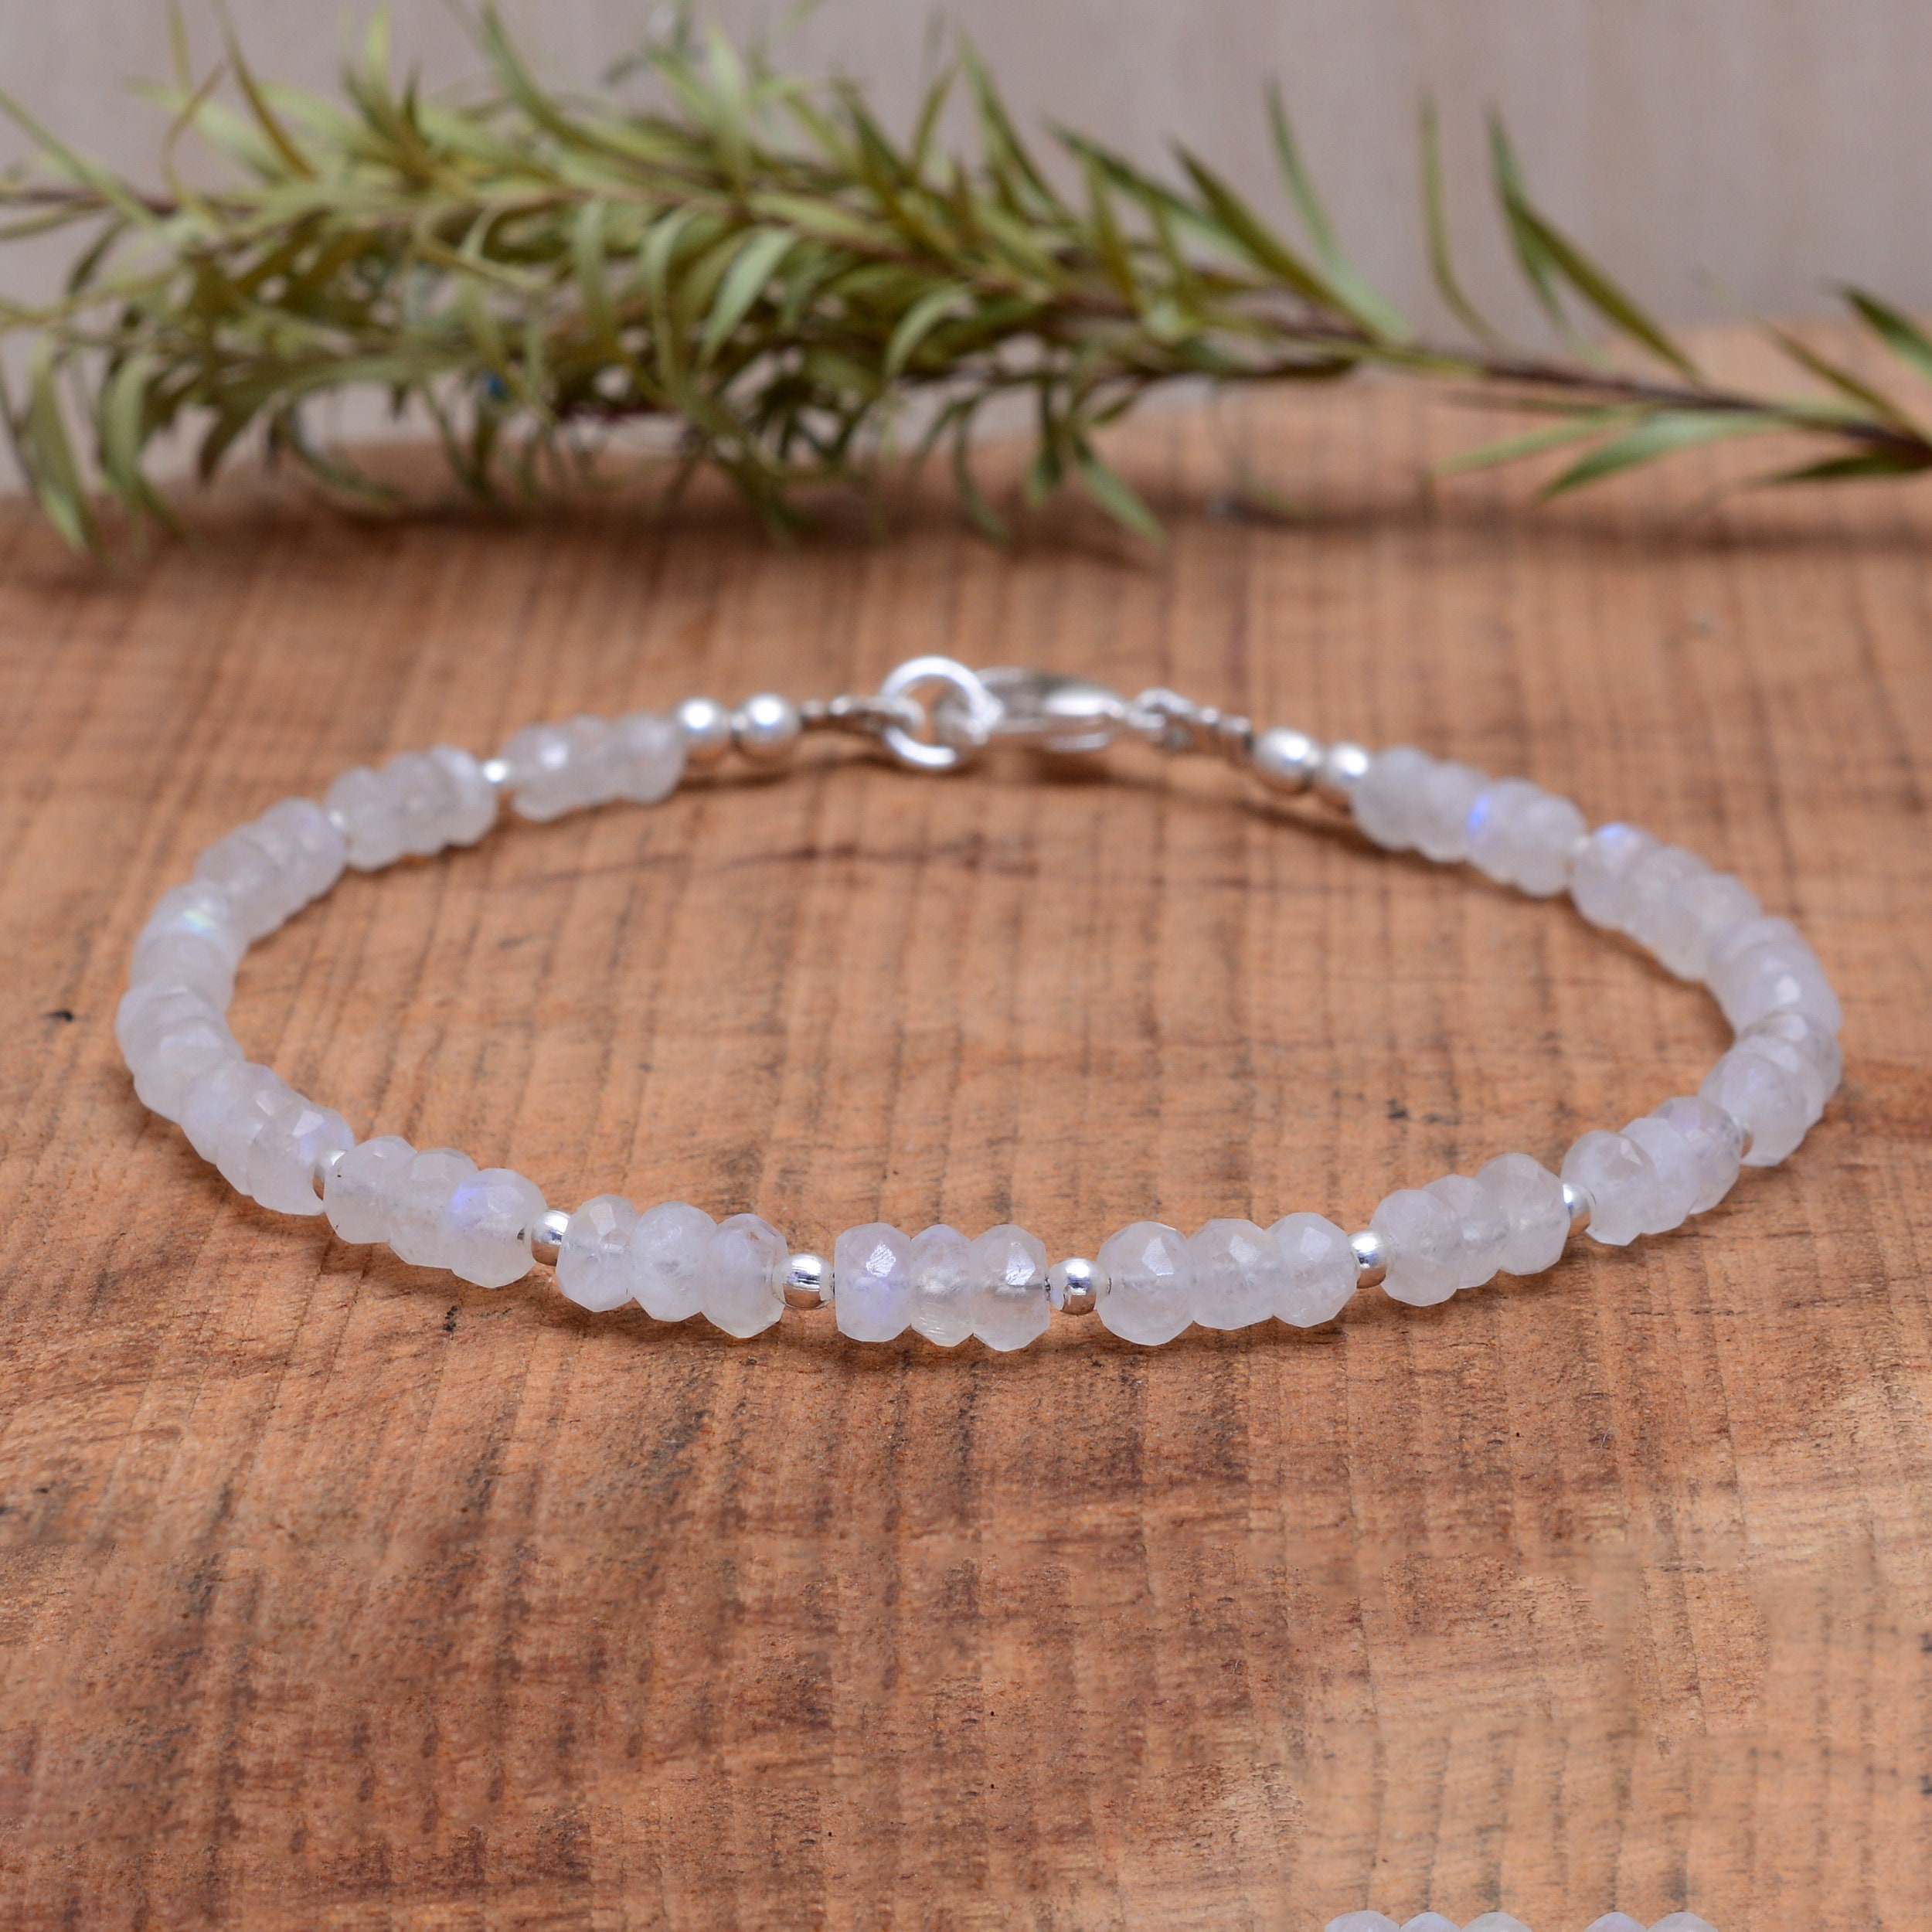 Buy White Moonstone Bracelet, Rainbow Moonstone Jewelry, Healing Crystal  Bracelet, Moonstone Beaded Bracelet for Women, June Birthstone Gift Online  in India - Etsy